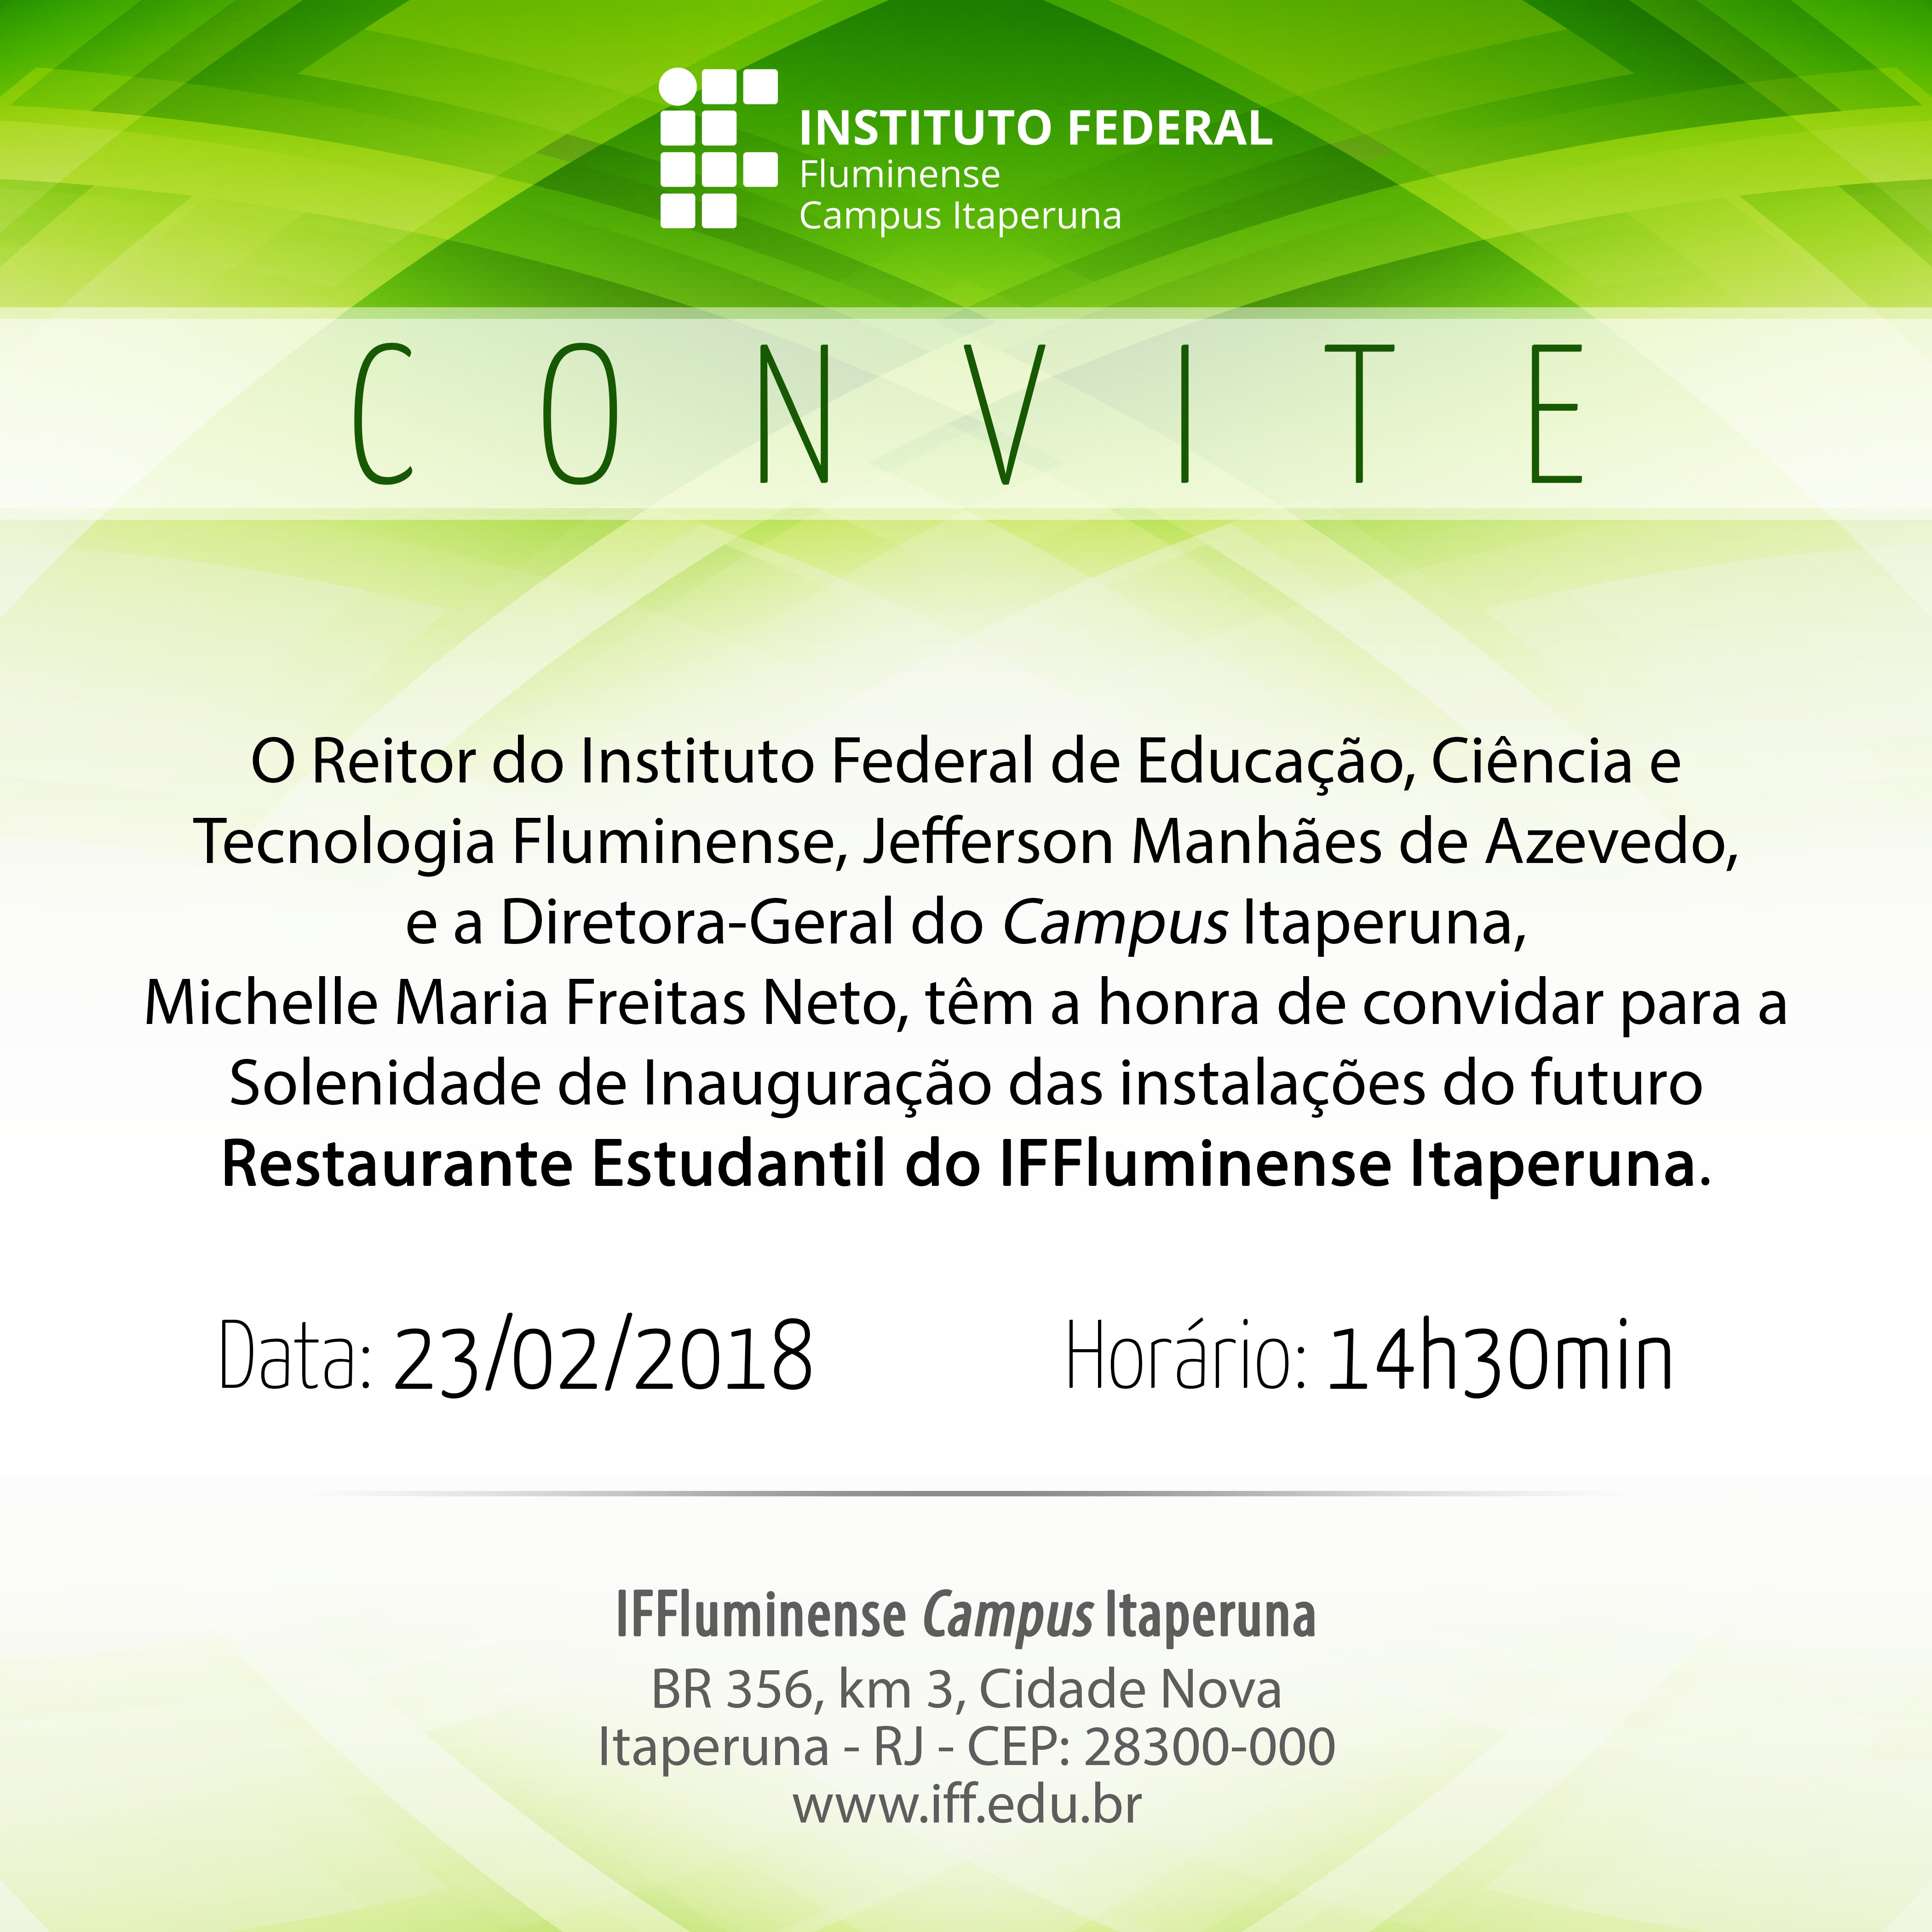 Convite de inauguração do Restaurante Estudantil do Campus Itaperuna